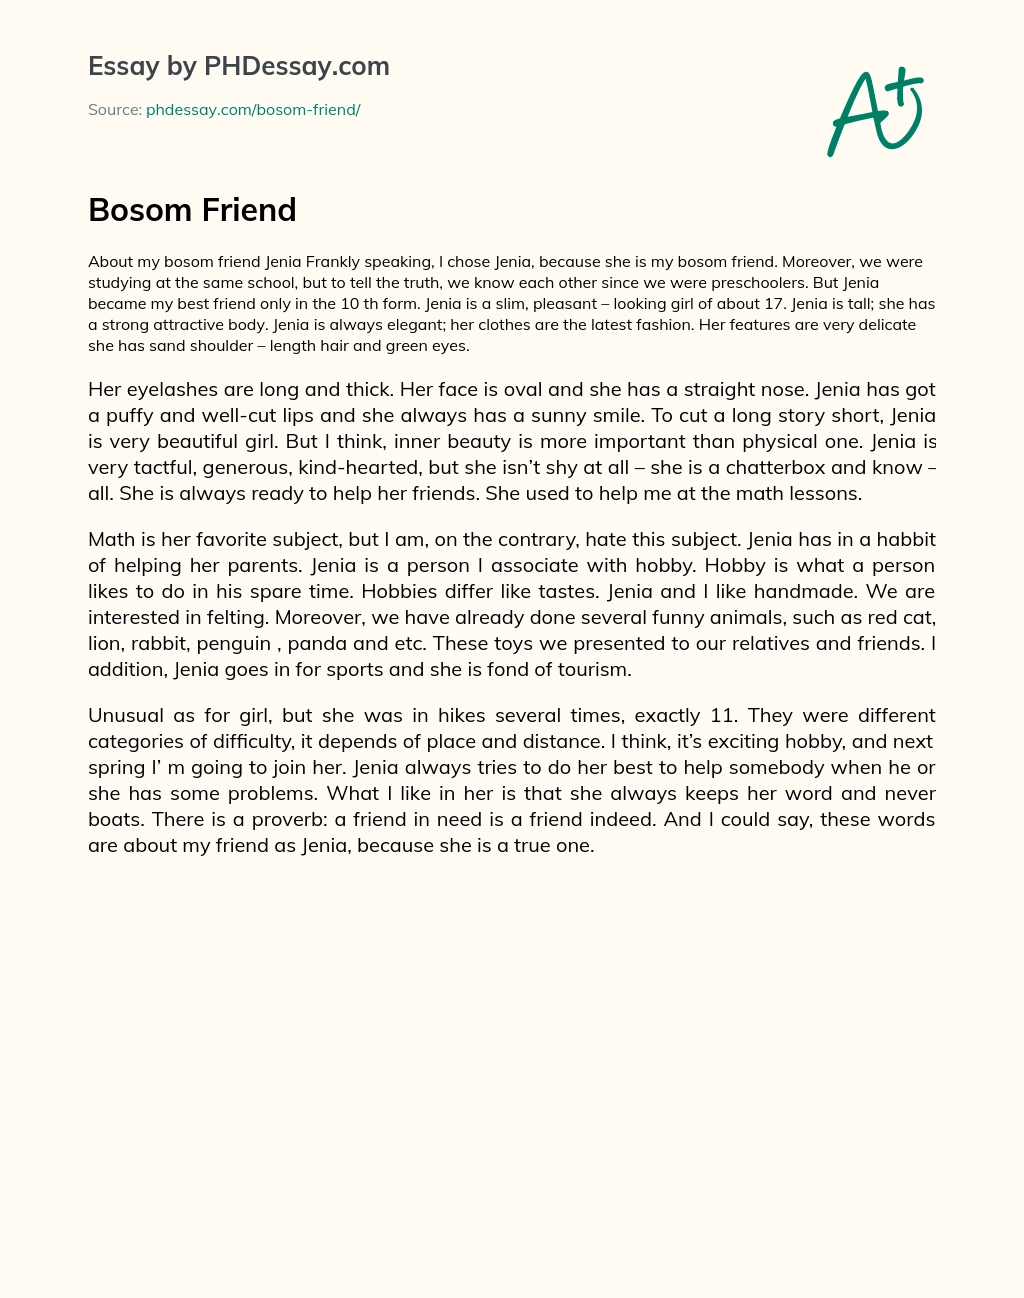 Bosom Friend essay